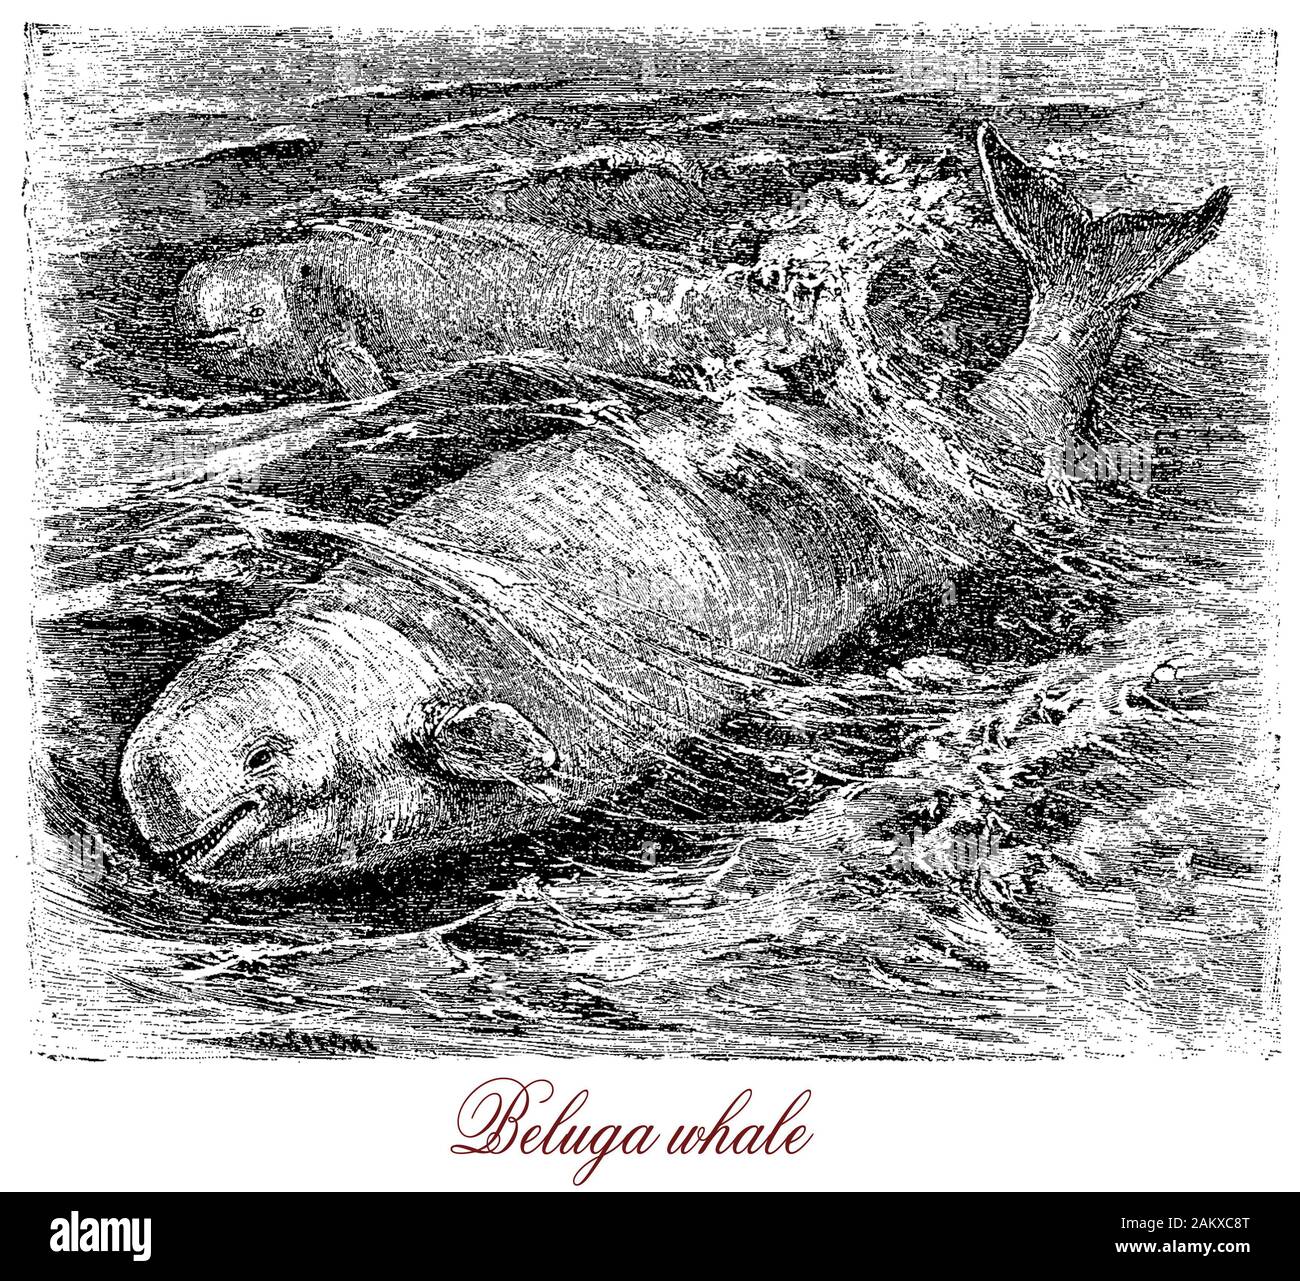 Il Beluga whale gregaria artica e subartica cetacean di colore bianco con un organo echolocation e altamente sviluppato senso dell'udito,è considerato un in via di estinzione e specie protette Foto Stock